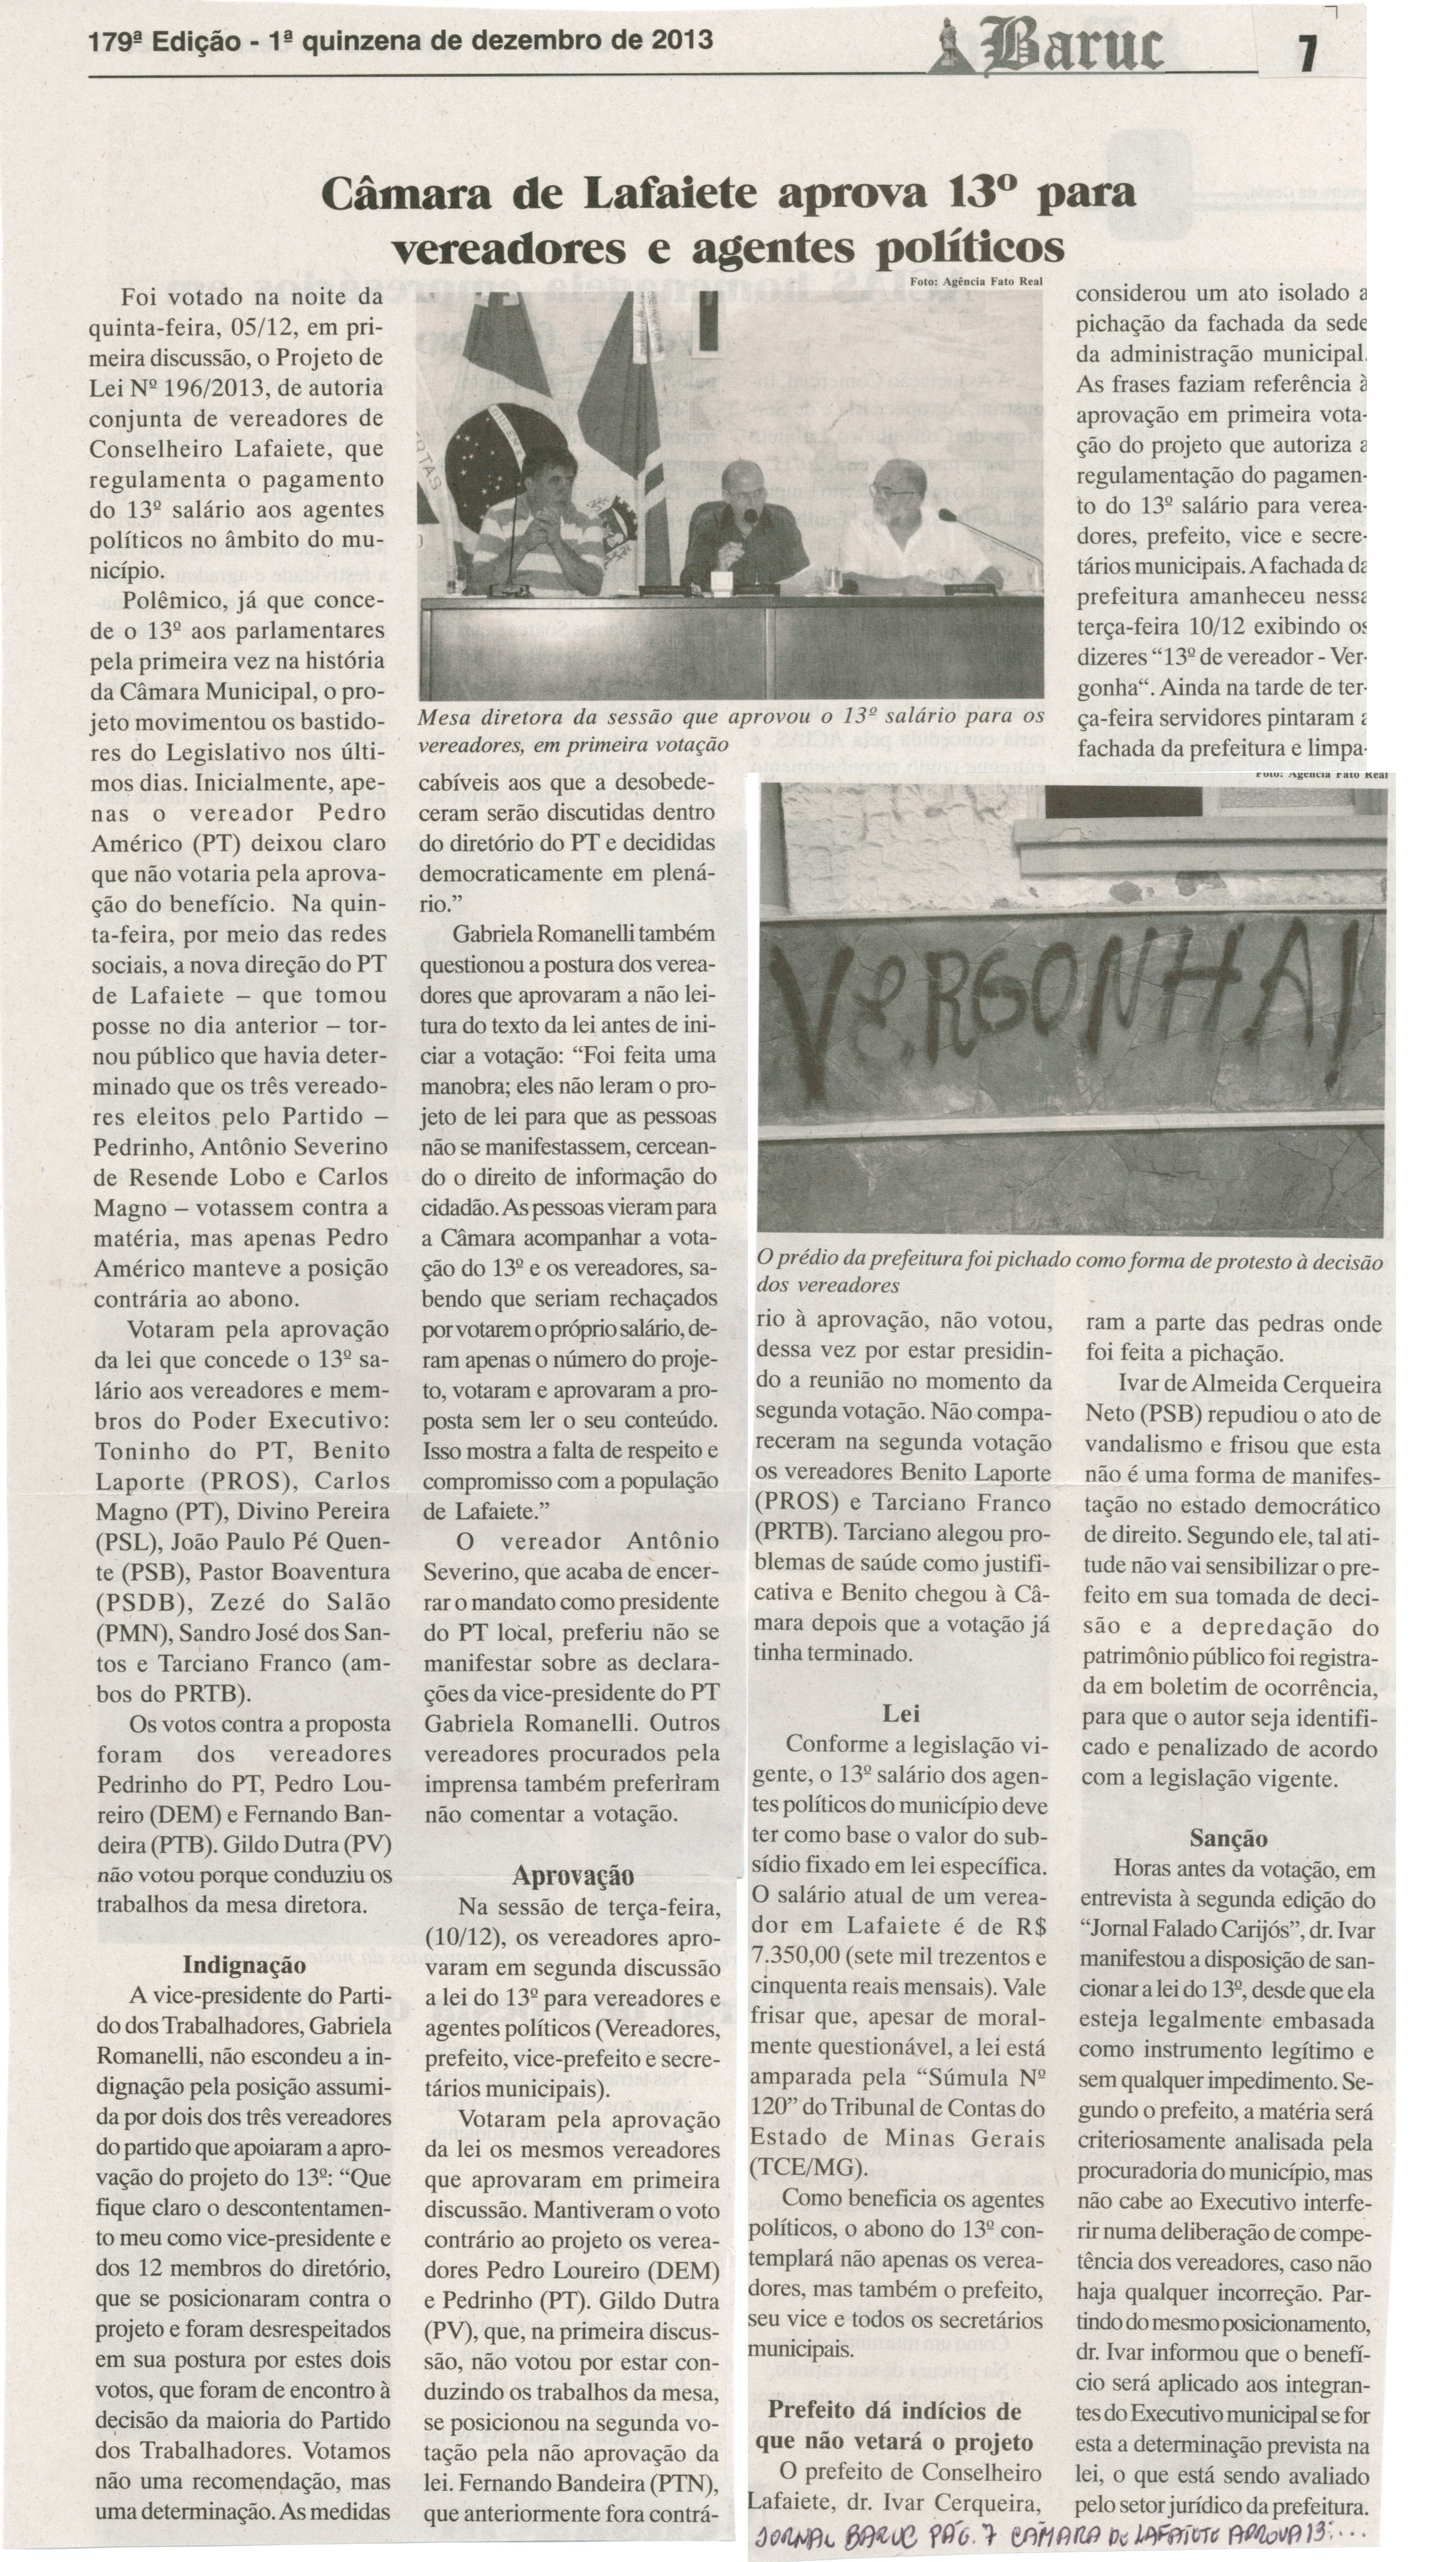 Câmara de Lafaiete aprova 13º para vereadores e agentes políticos. Jornal Baruc, Congonhas, 17 dez. 2013, p. 7.